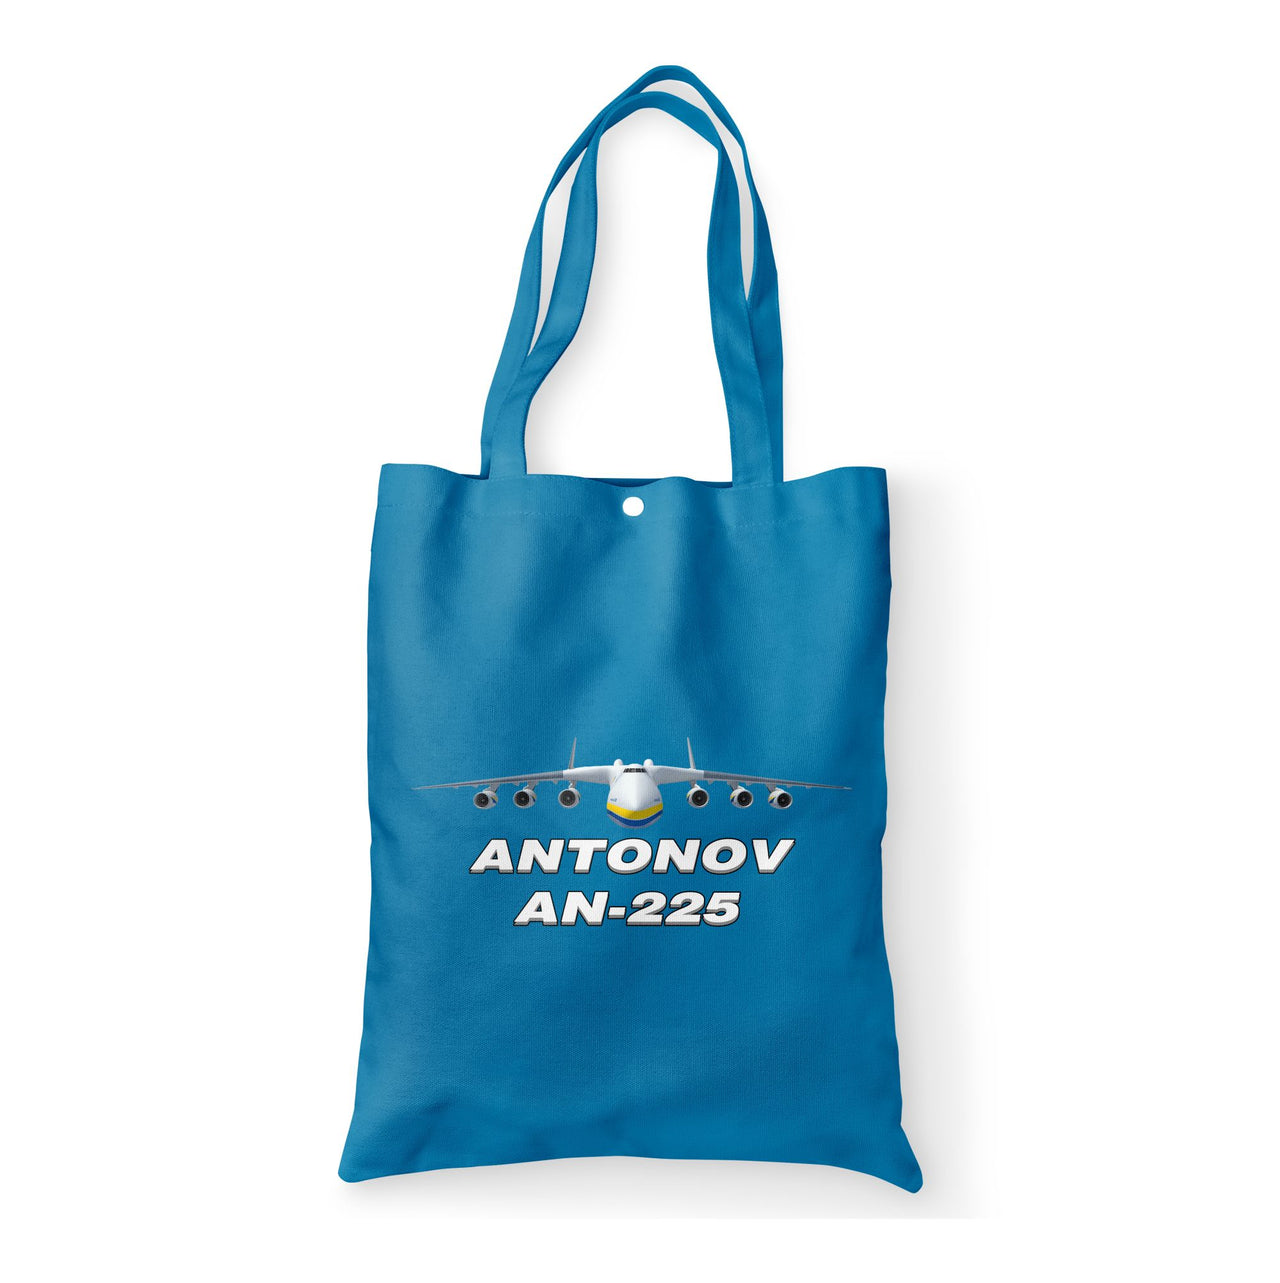 Antonov AN-225 (16) Designed Tote Bags